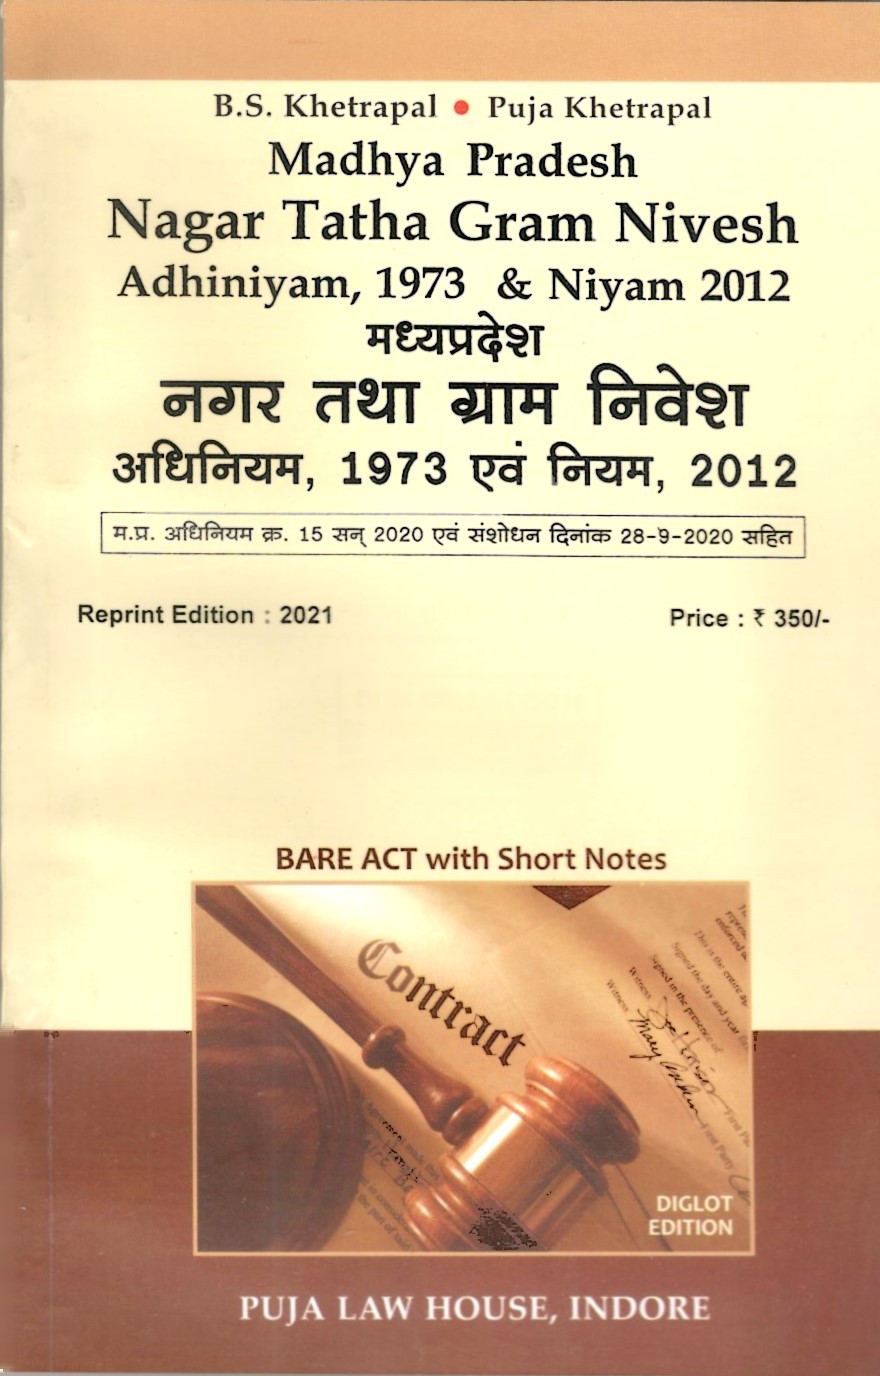 Madhya Pradesh Nagar Tatha Gram Nivesh Act, 1973 & Rules, 2012 / मध्य प्रदेश नगर तथा ग्राम निवेश अधिनियम, 1973 एवं नियम, 2012